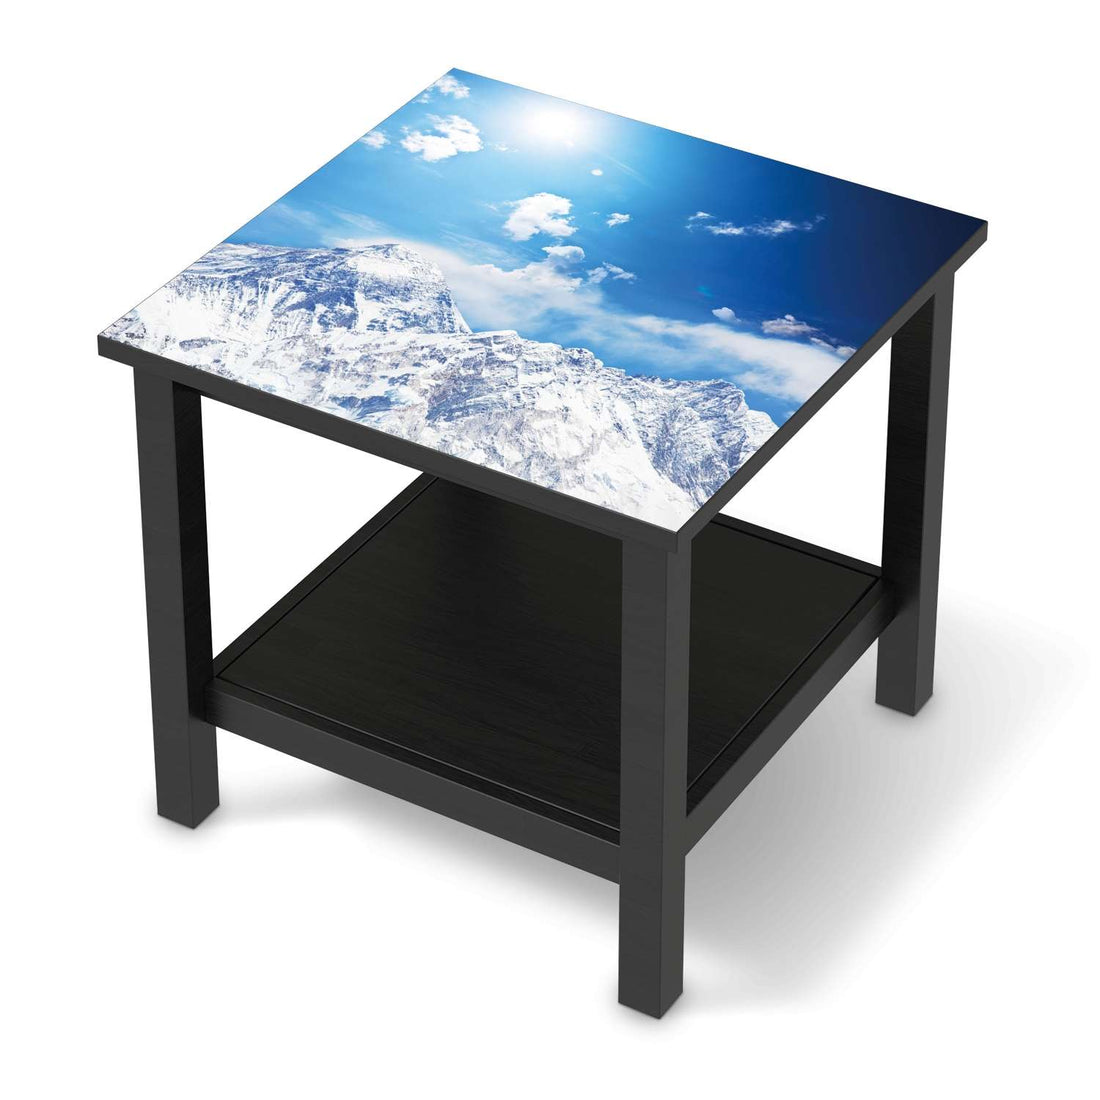 Möbel Klebefolie Everest - IKEA Hemnes Beistelltisch 55x55 cm - schwarz